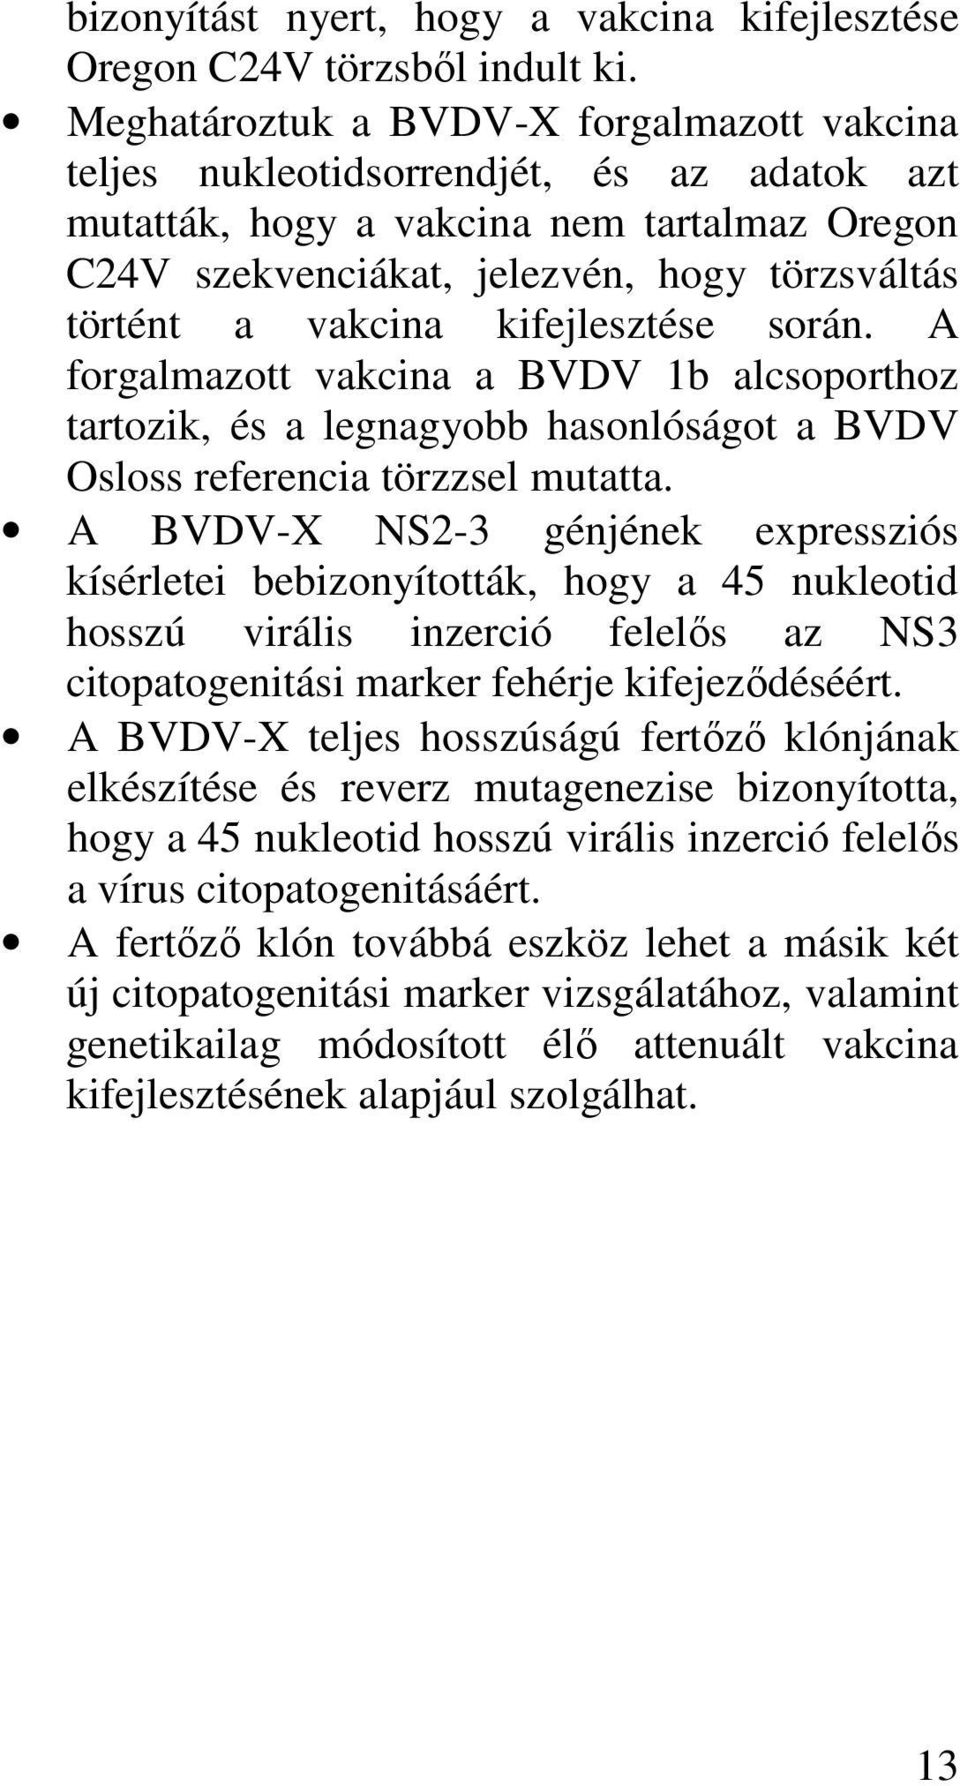 kifejlesztése során. A forgalmazott vakcina a BVDV 1b alcsoporthoz tartozik, és a legnagyobb hasonlóságot a BVDV Osloss referencia törzzsel mutatta.